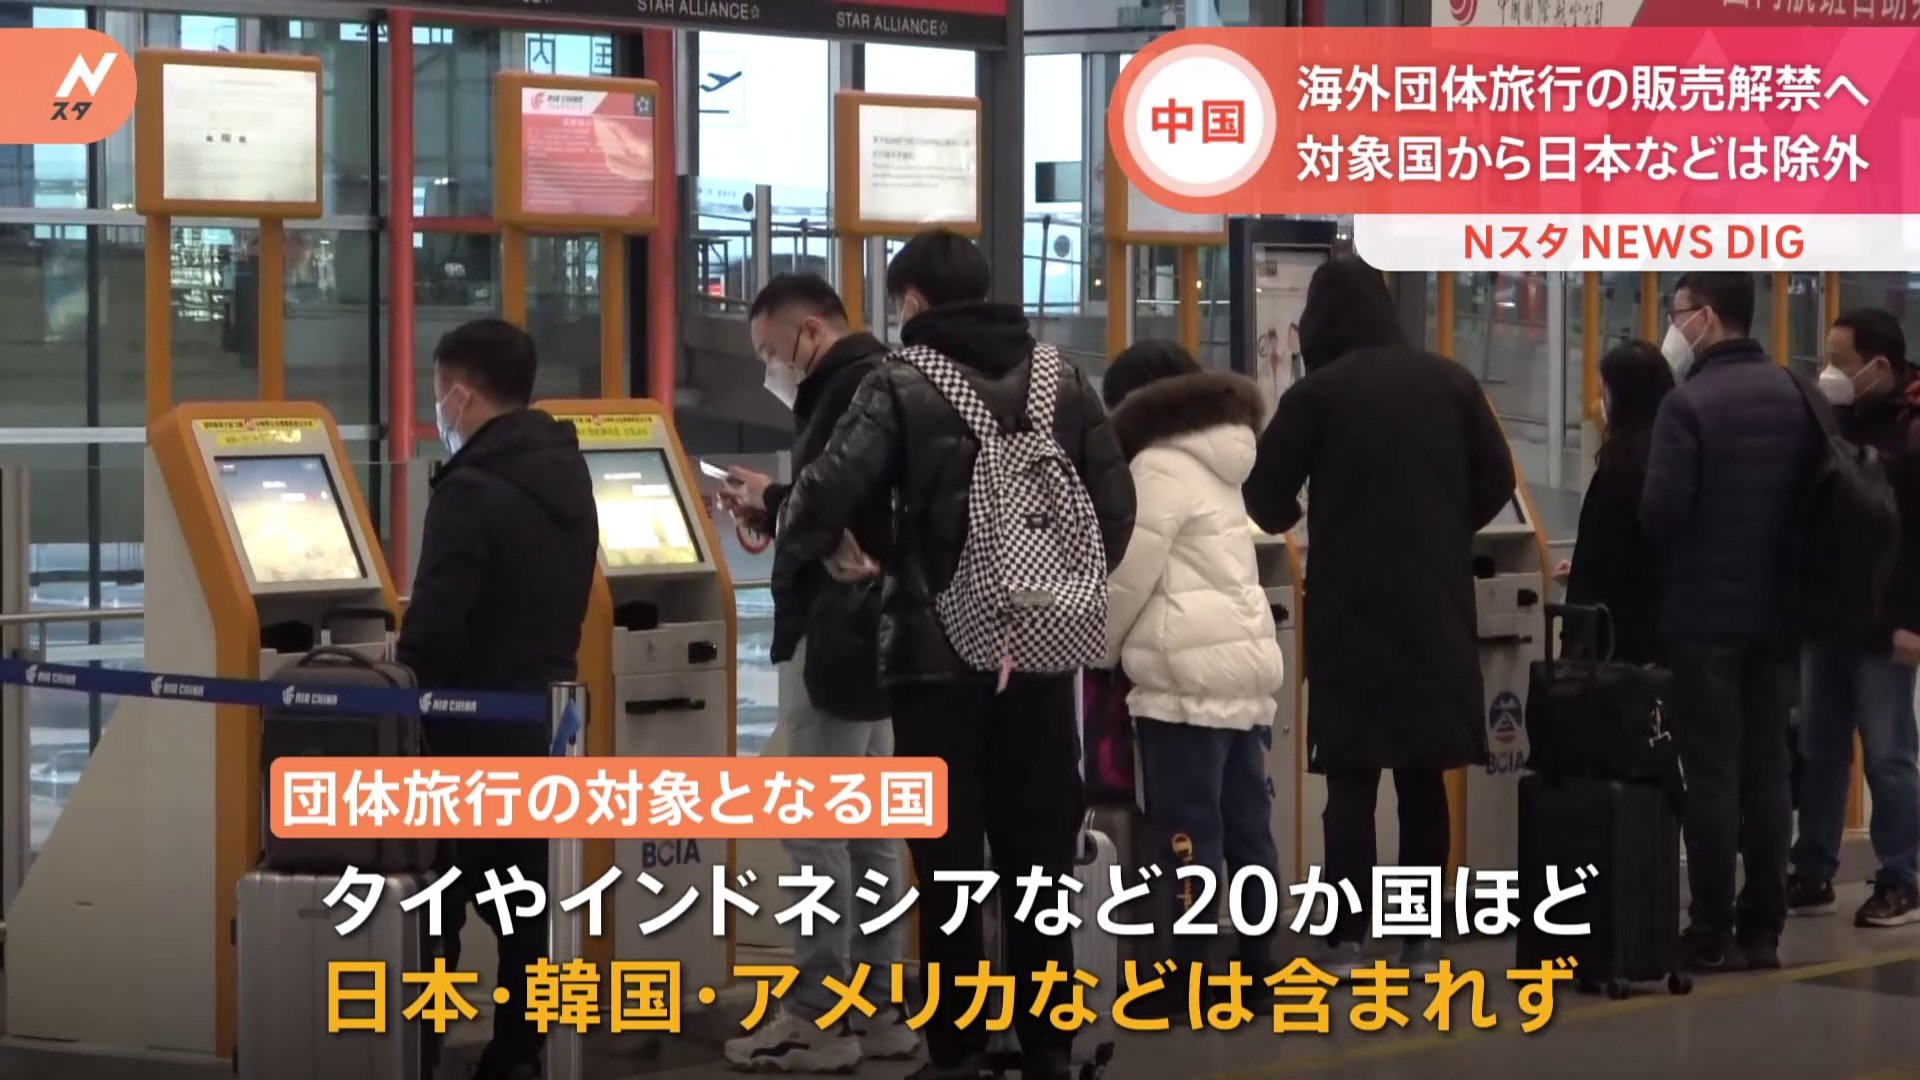 「旅行活動を回復する条件は整った」 中国が2月6日から海外への団体旅行販売解禁 日韓米は含まず